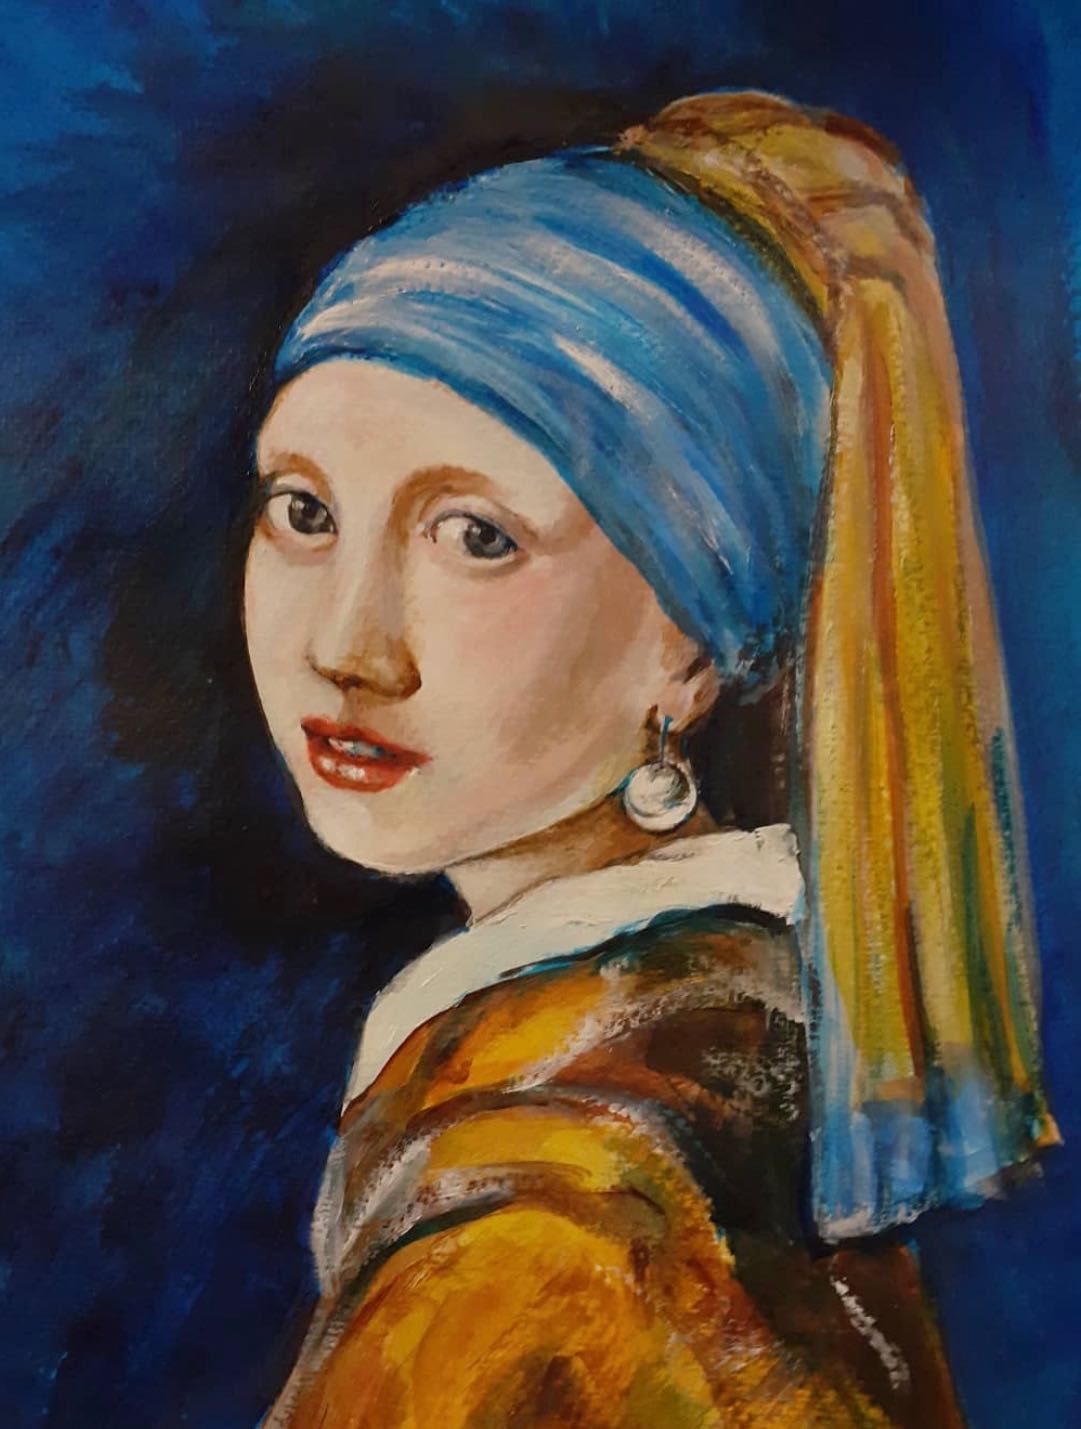 Живопись по мотивам картины
Ян Вермеер «Девушка с жемчужной серёжкой»